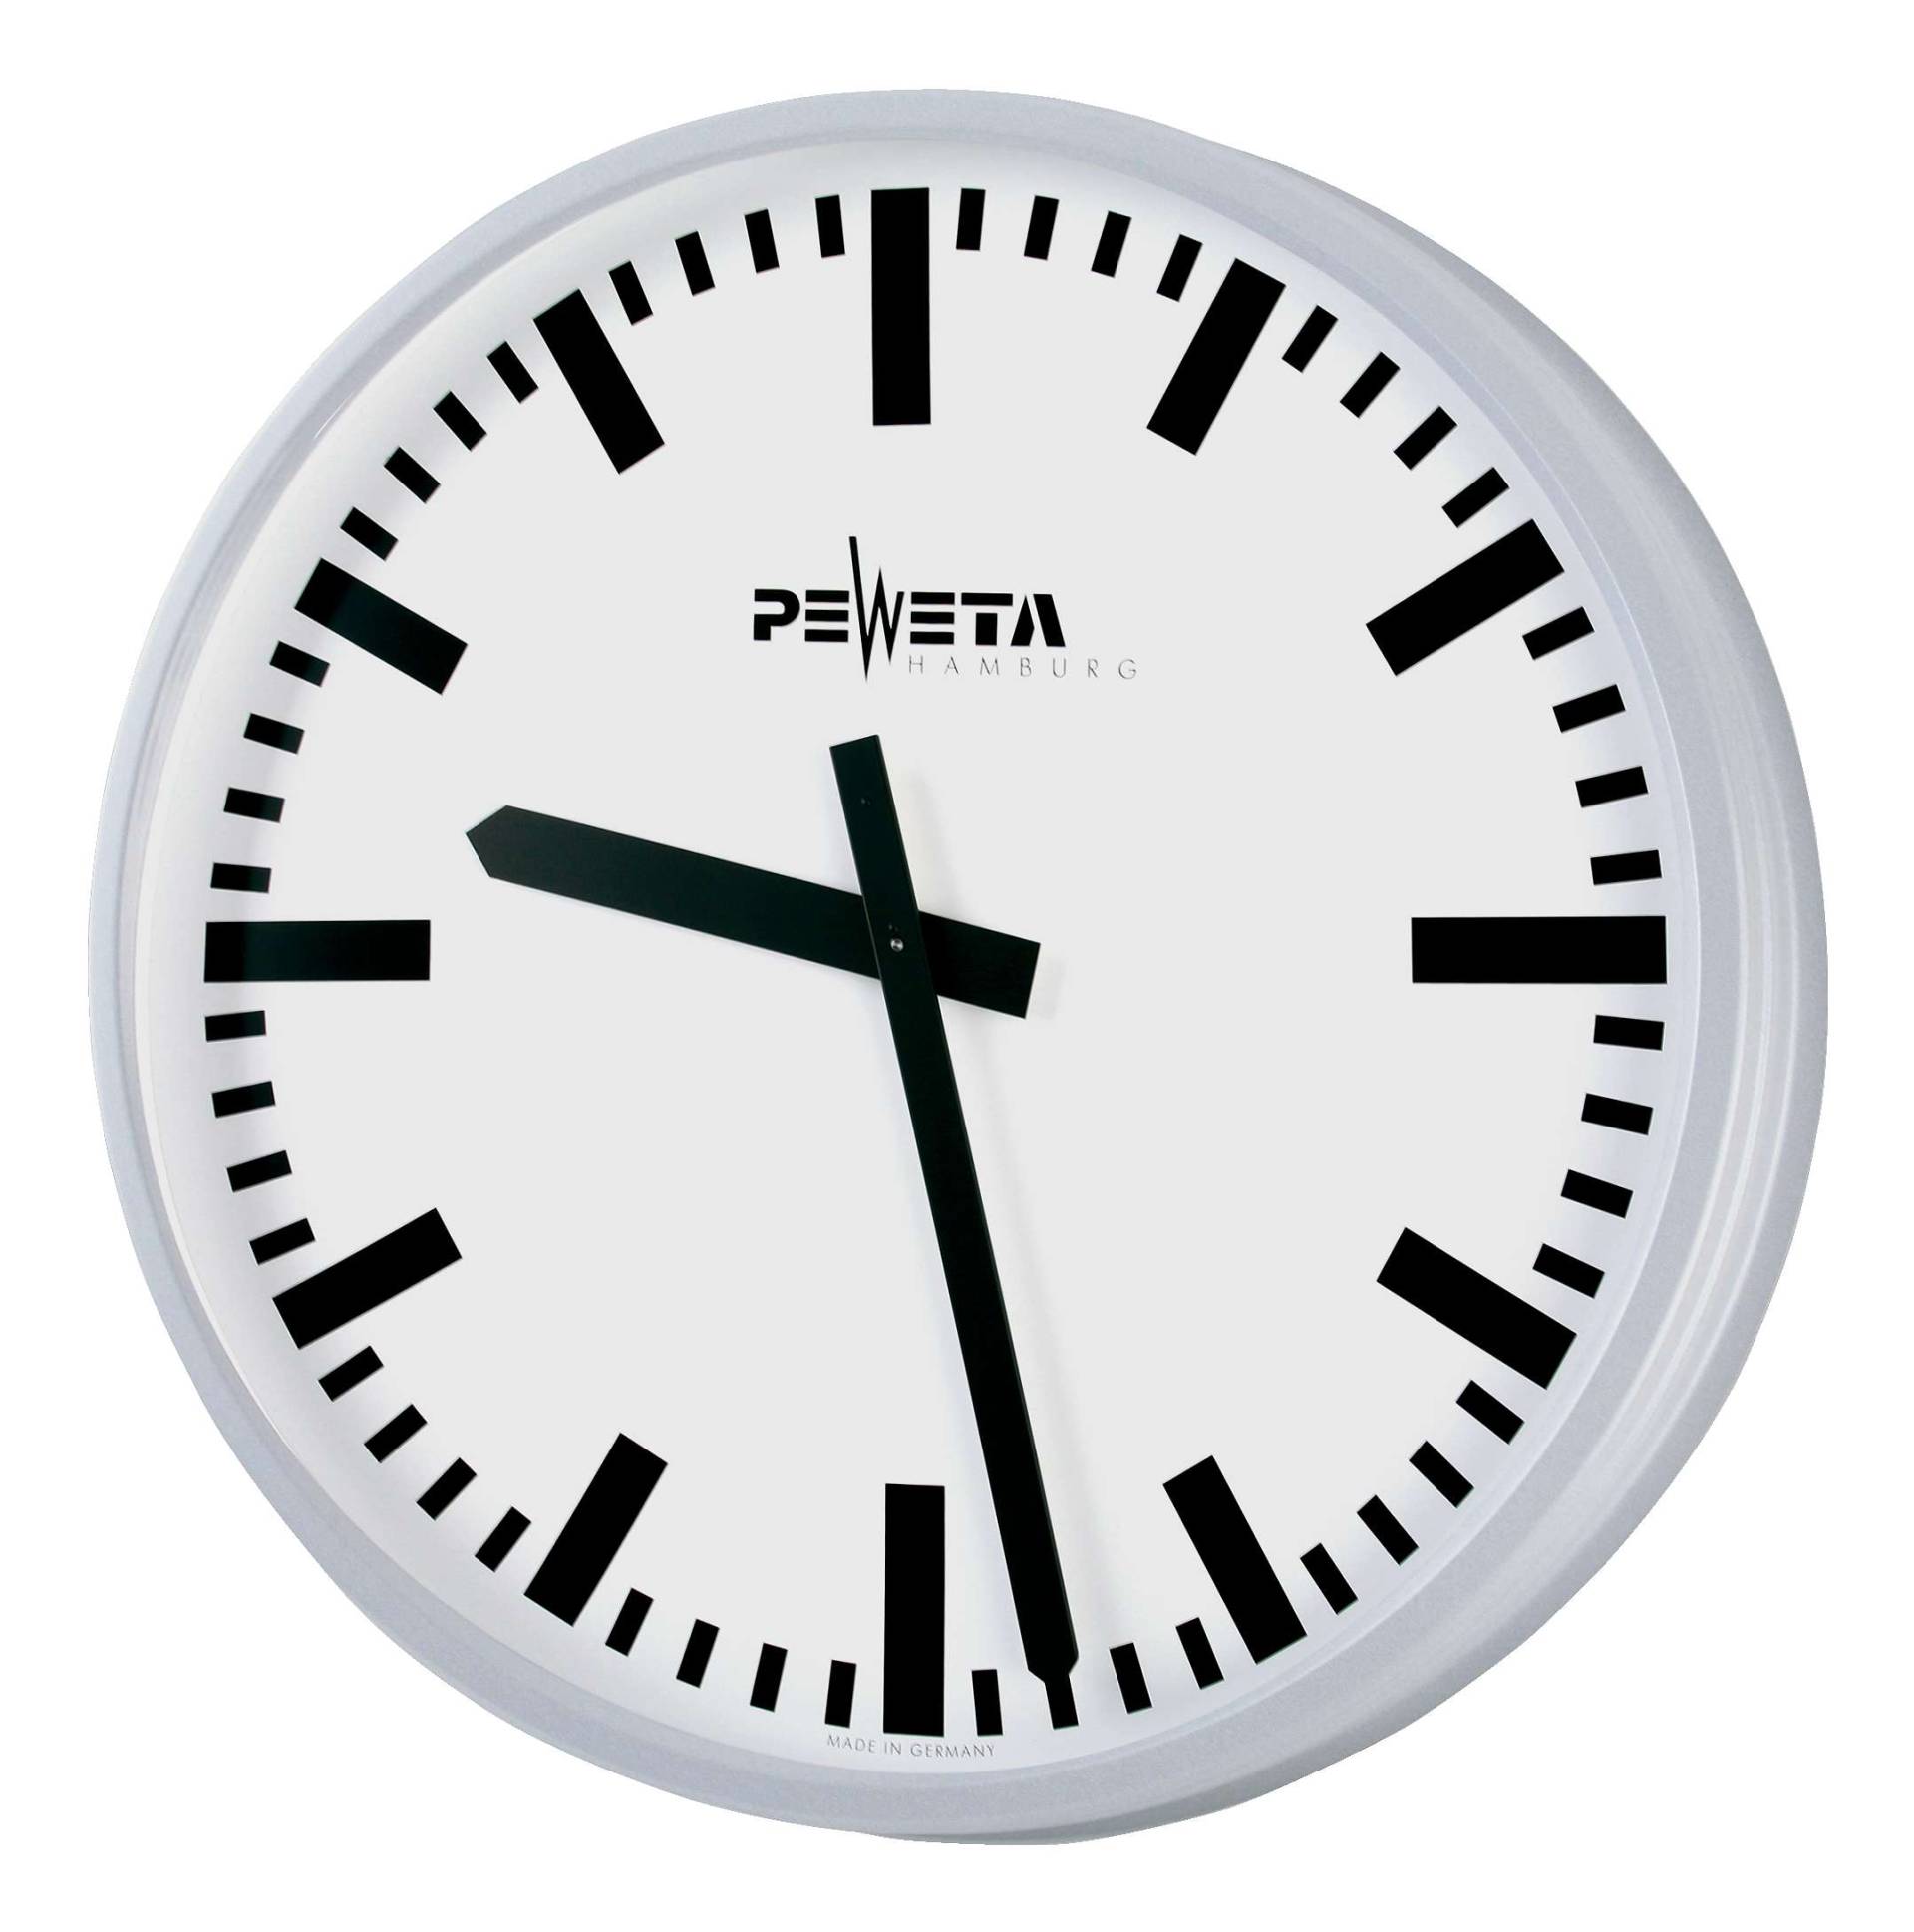 Peweta Wanduhr Großraum, ø 52 cm, Batteriebetrieb, Standard, Zifferblatt DIN-Balken von Peweta